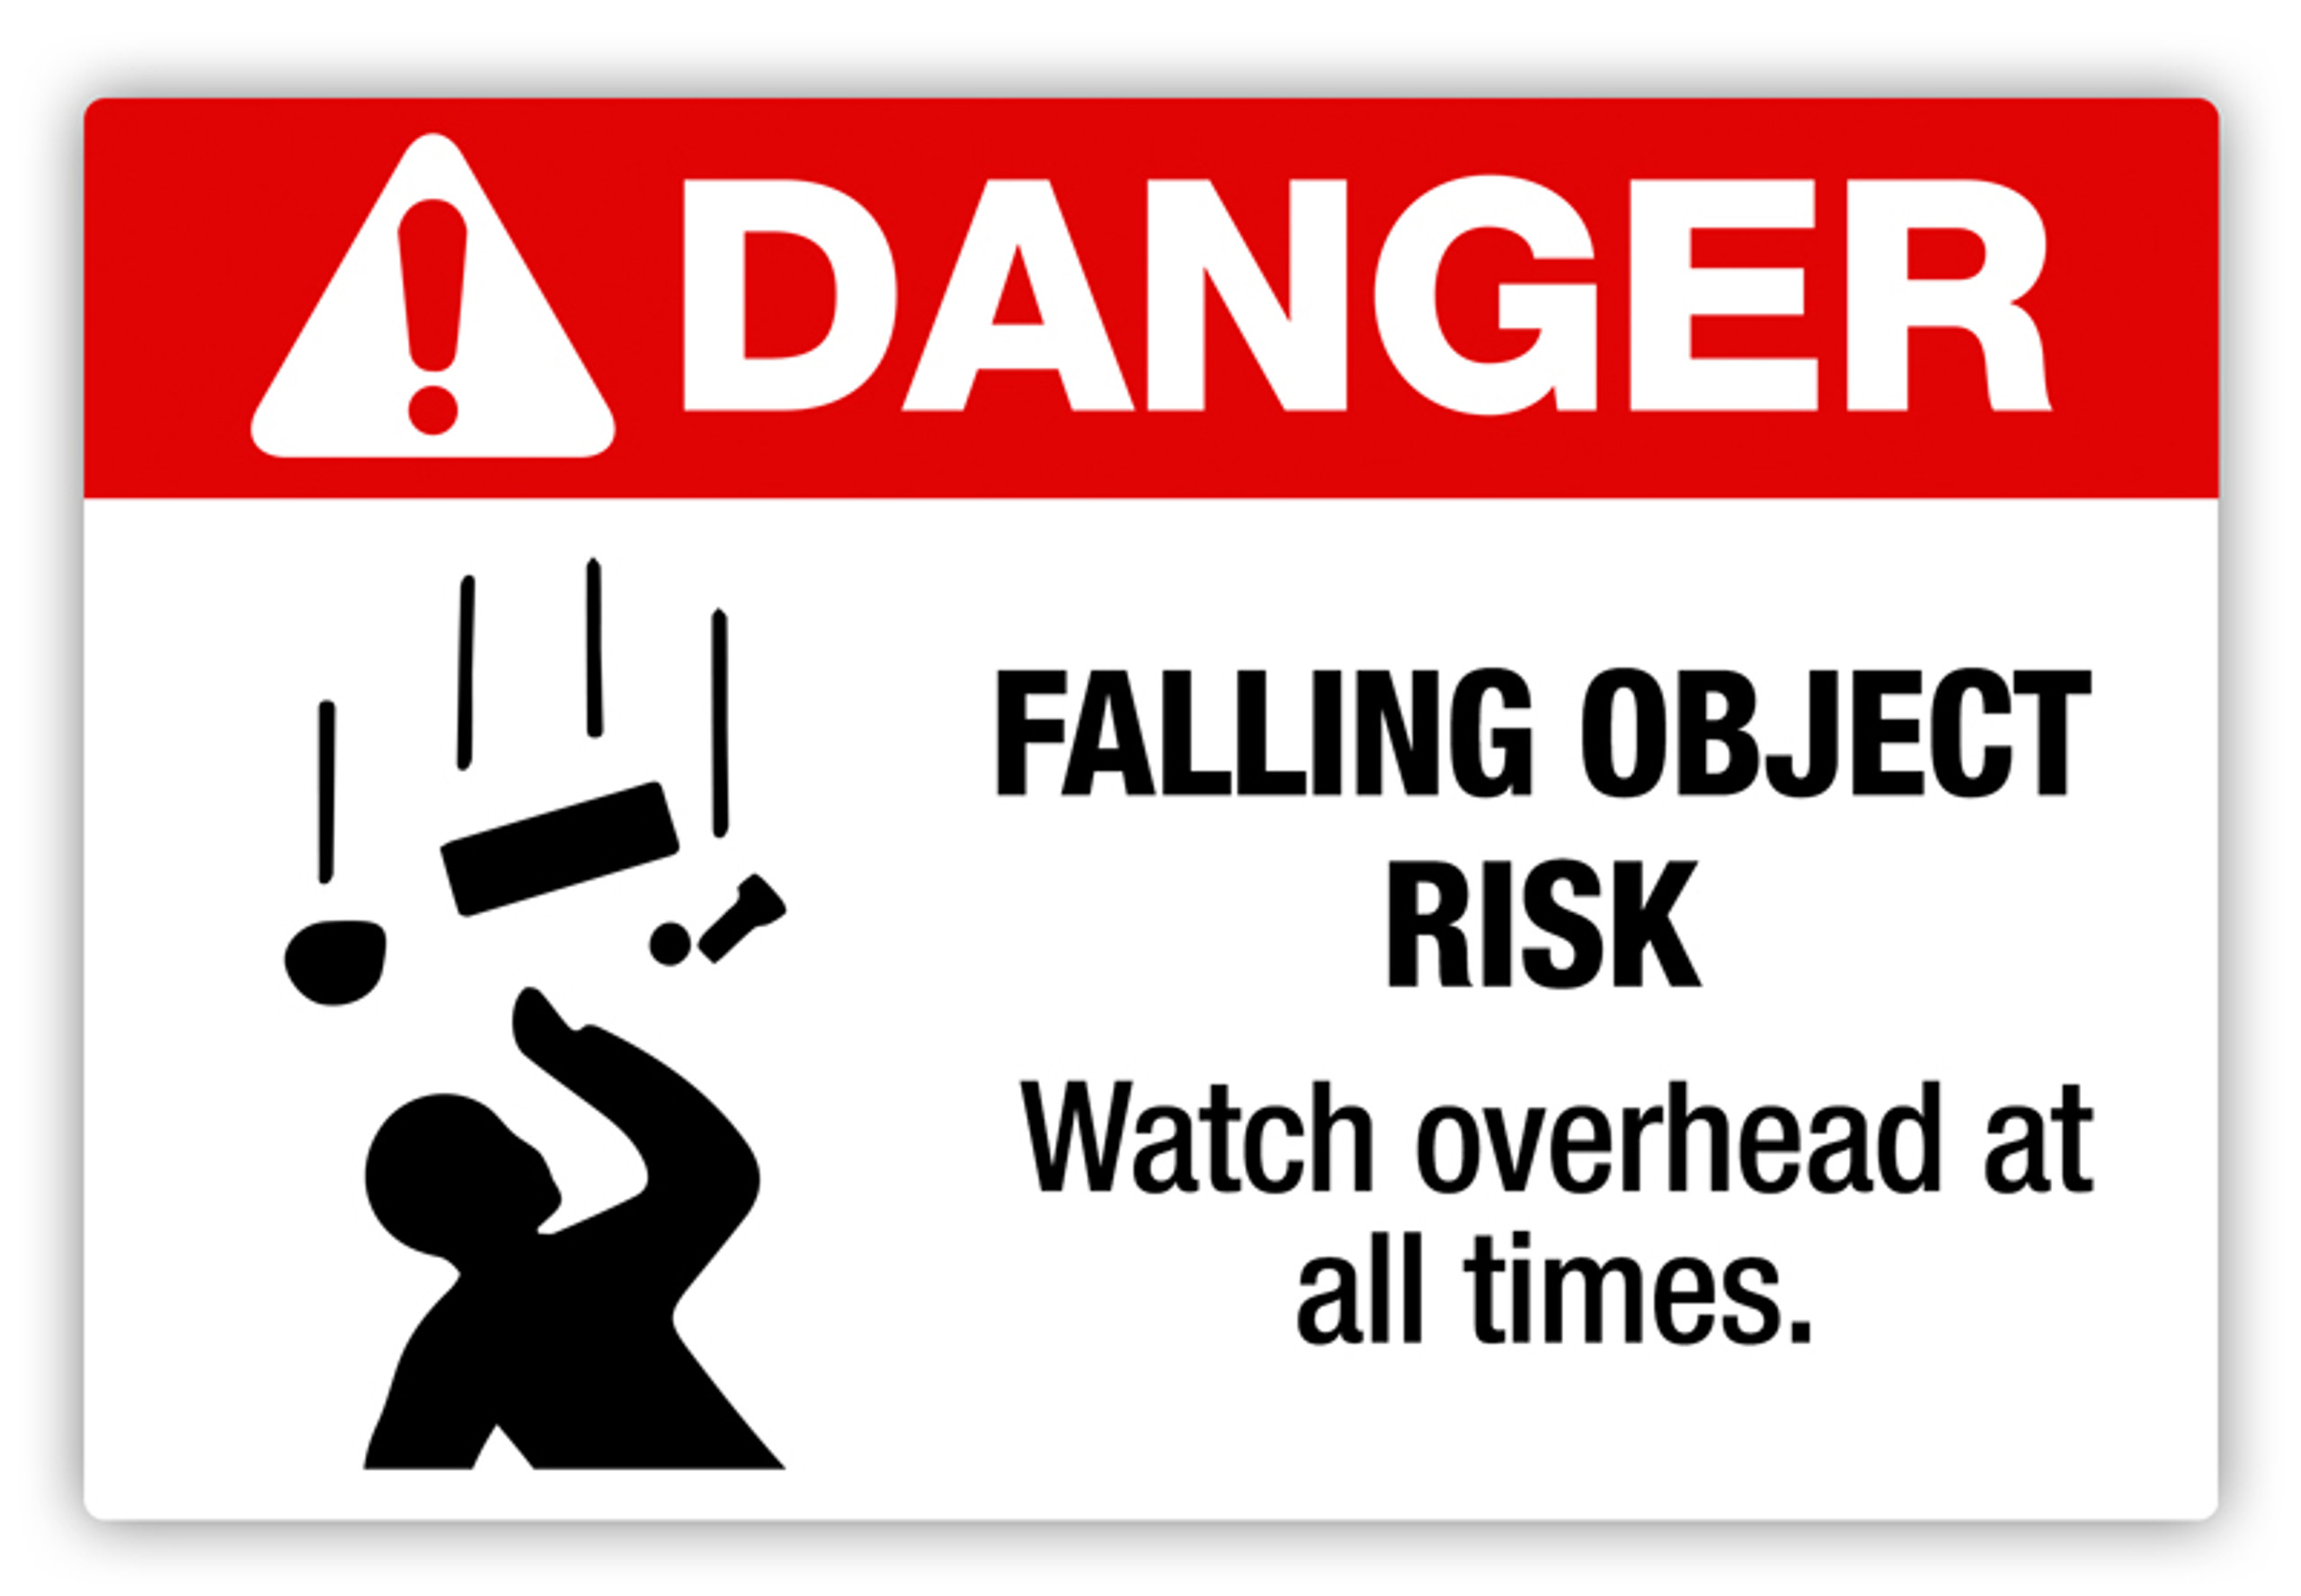 Falling For Danger Ch 16 Danger - Falling Object Risk Label